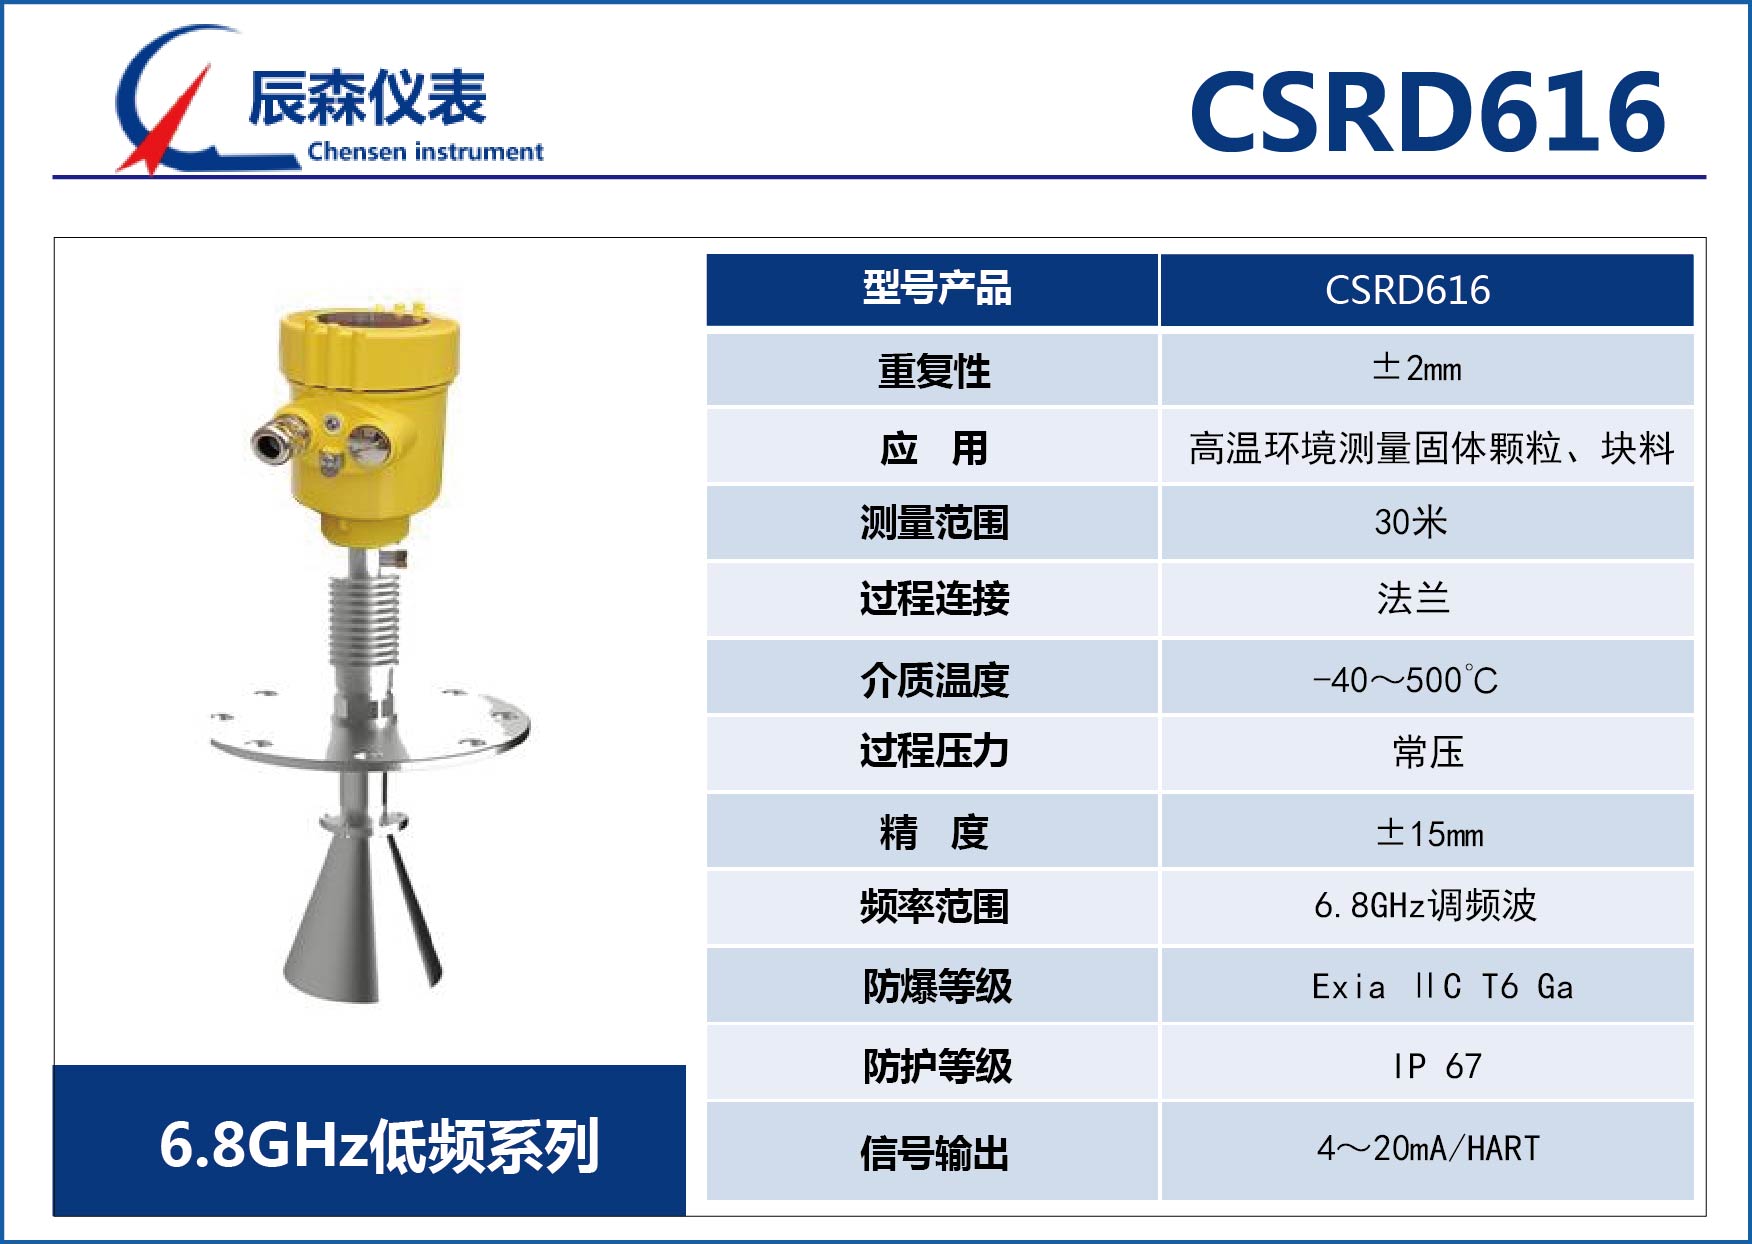 低頻雷達物位計CSRD616